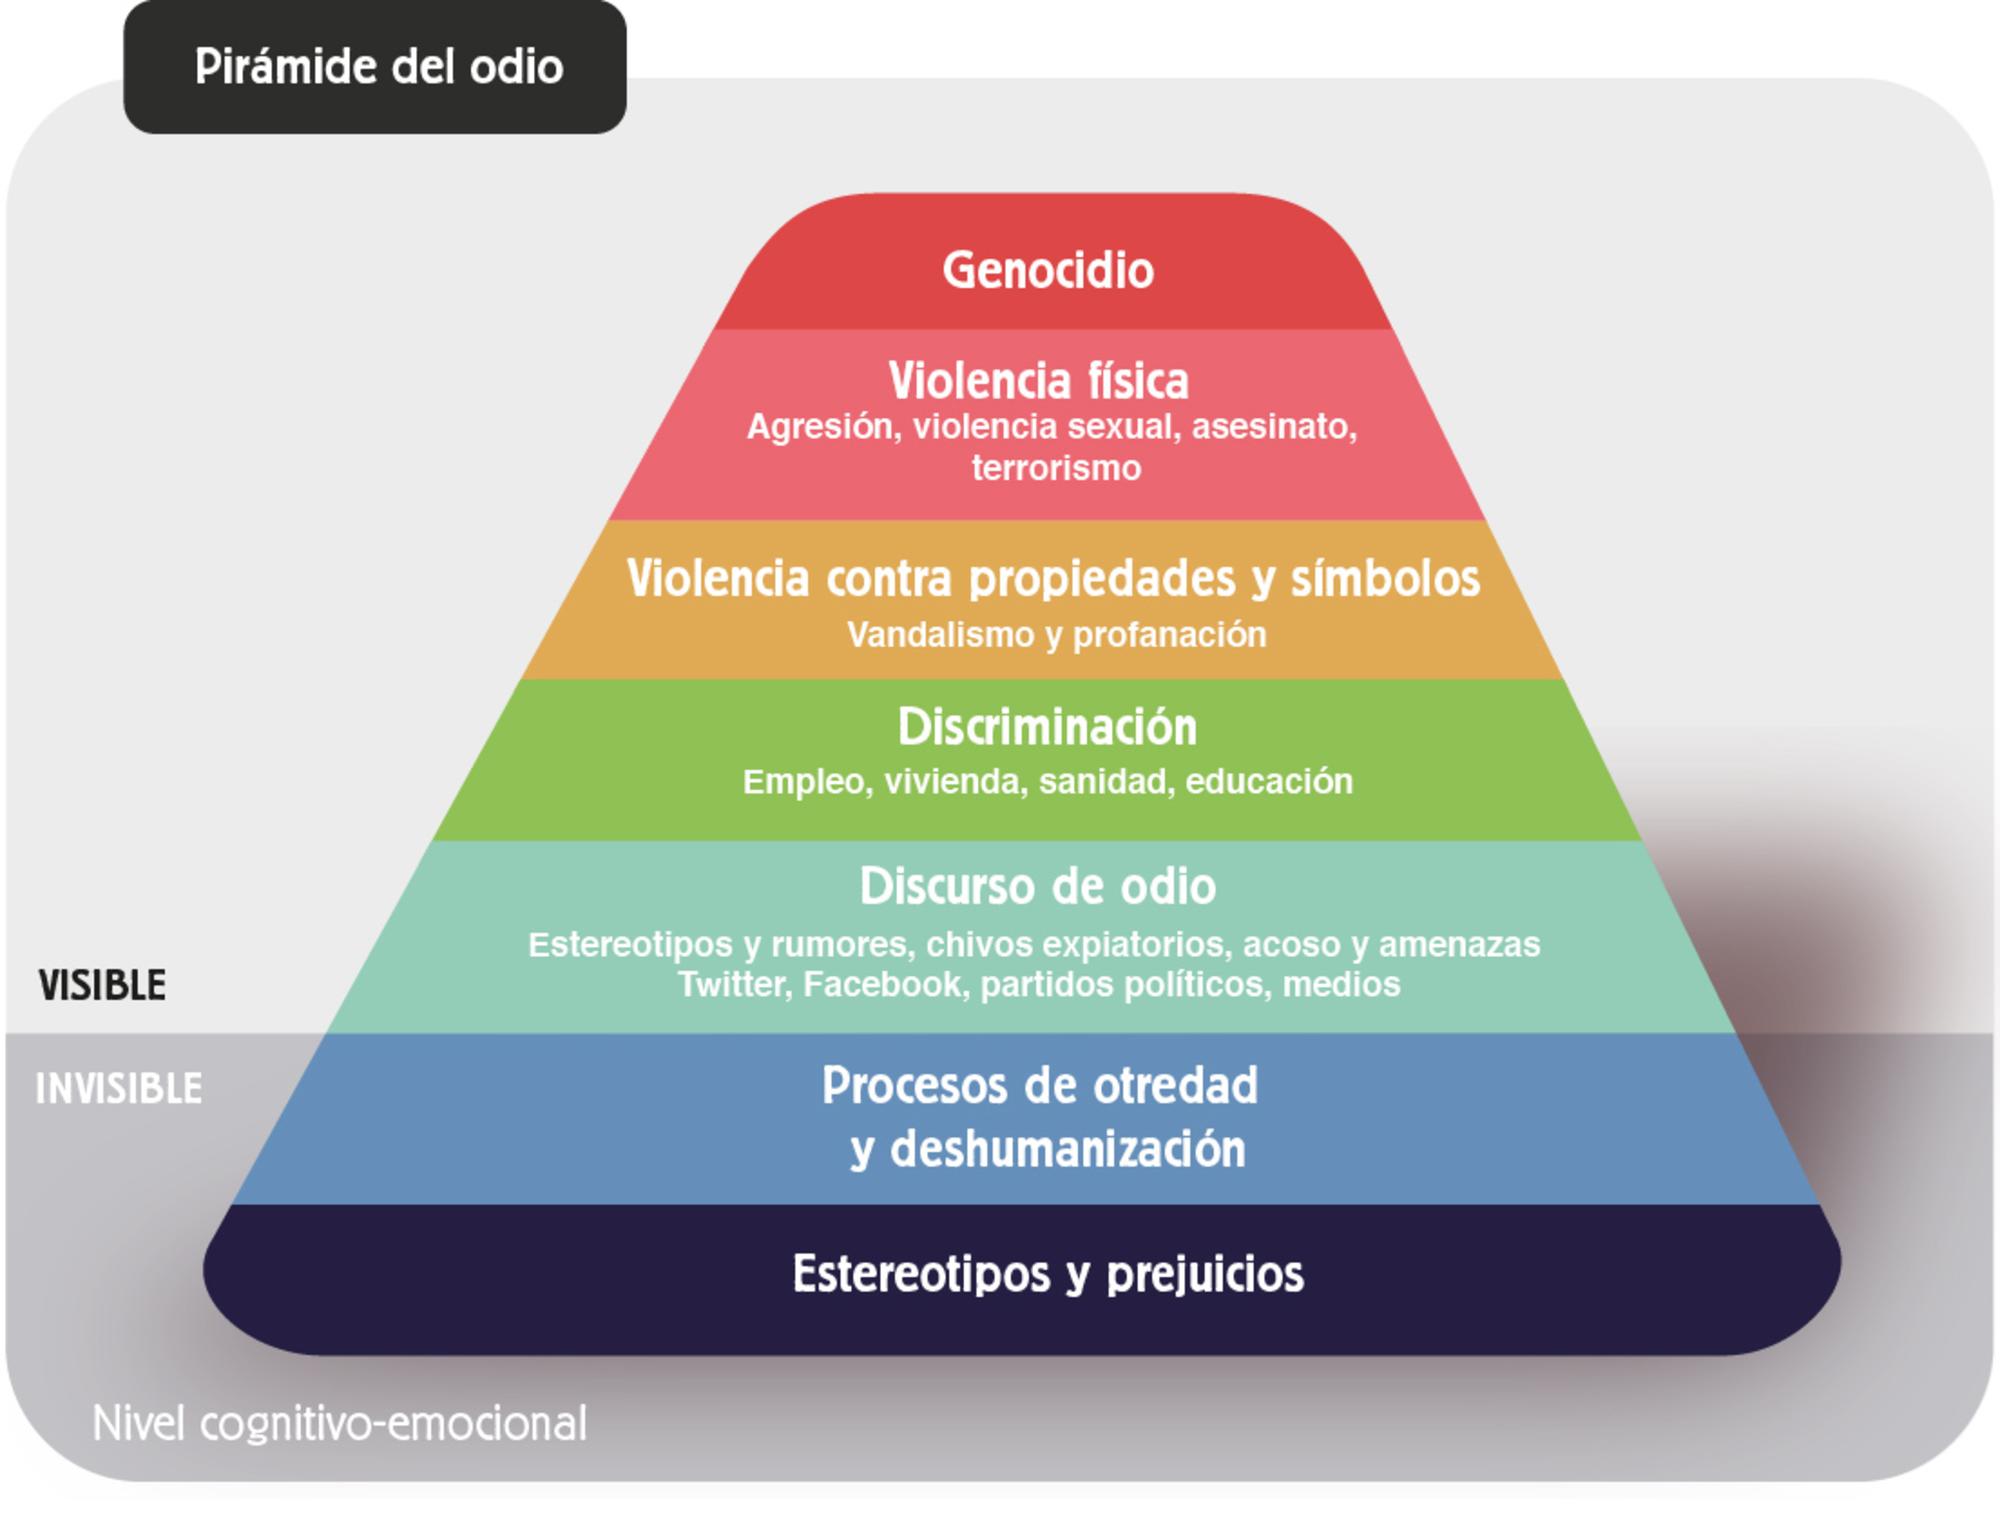 piramide del odio barcelona